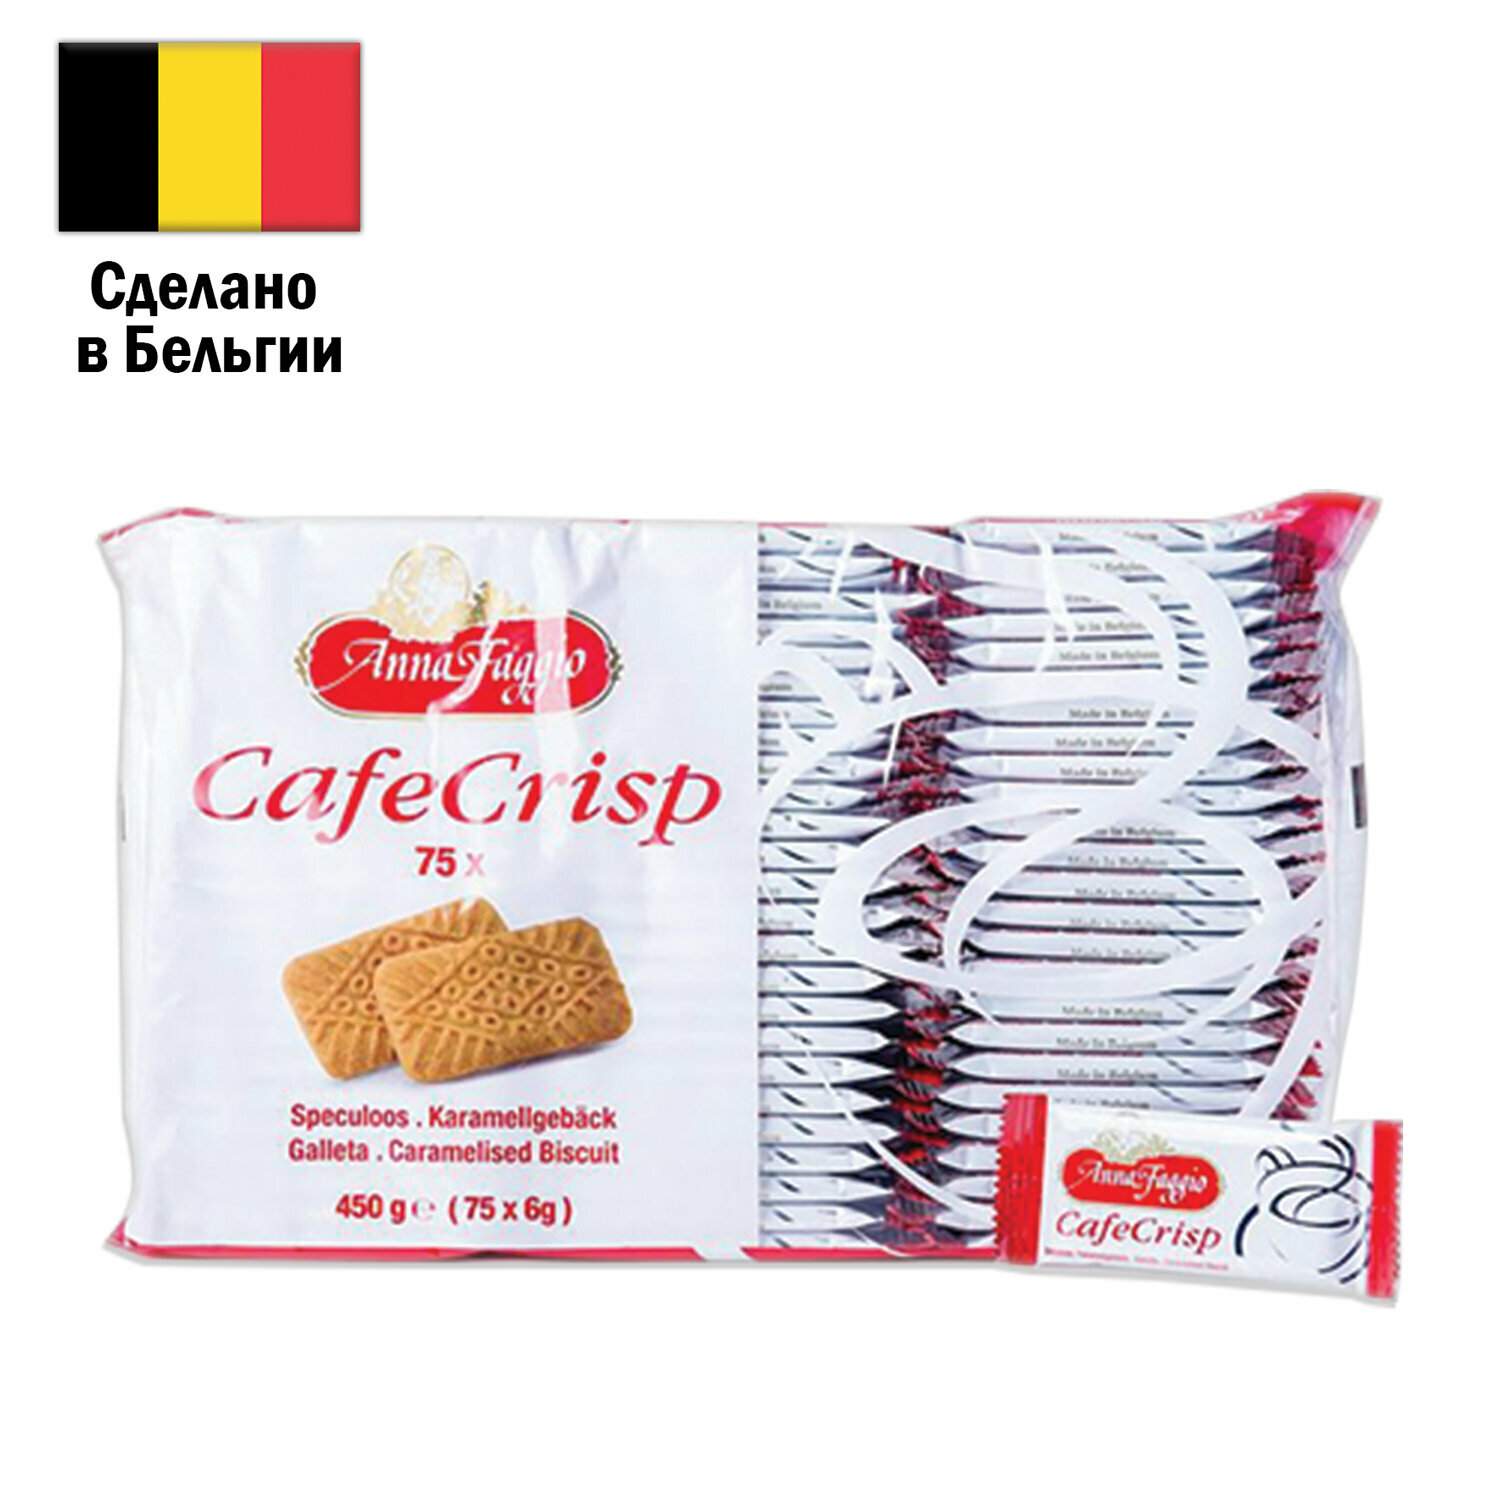 Печенье в индивидуальной упаковке ANNA FAGGIO “Cafe Crisp", 75 штук, карамелизированное, 450 г, 622637